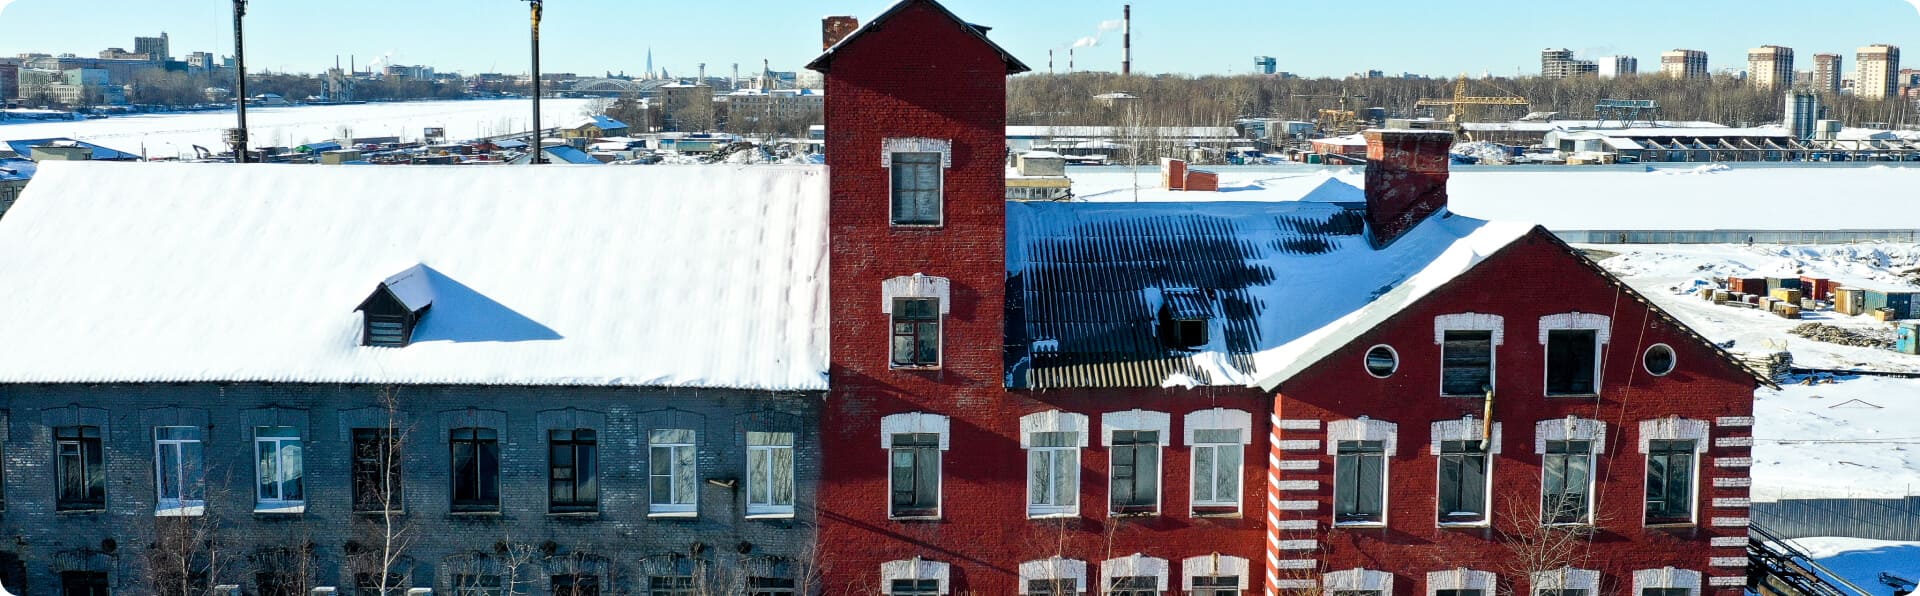 Здание завода Г.И. Веге13